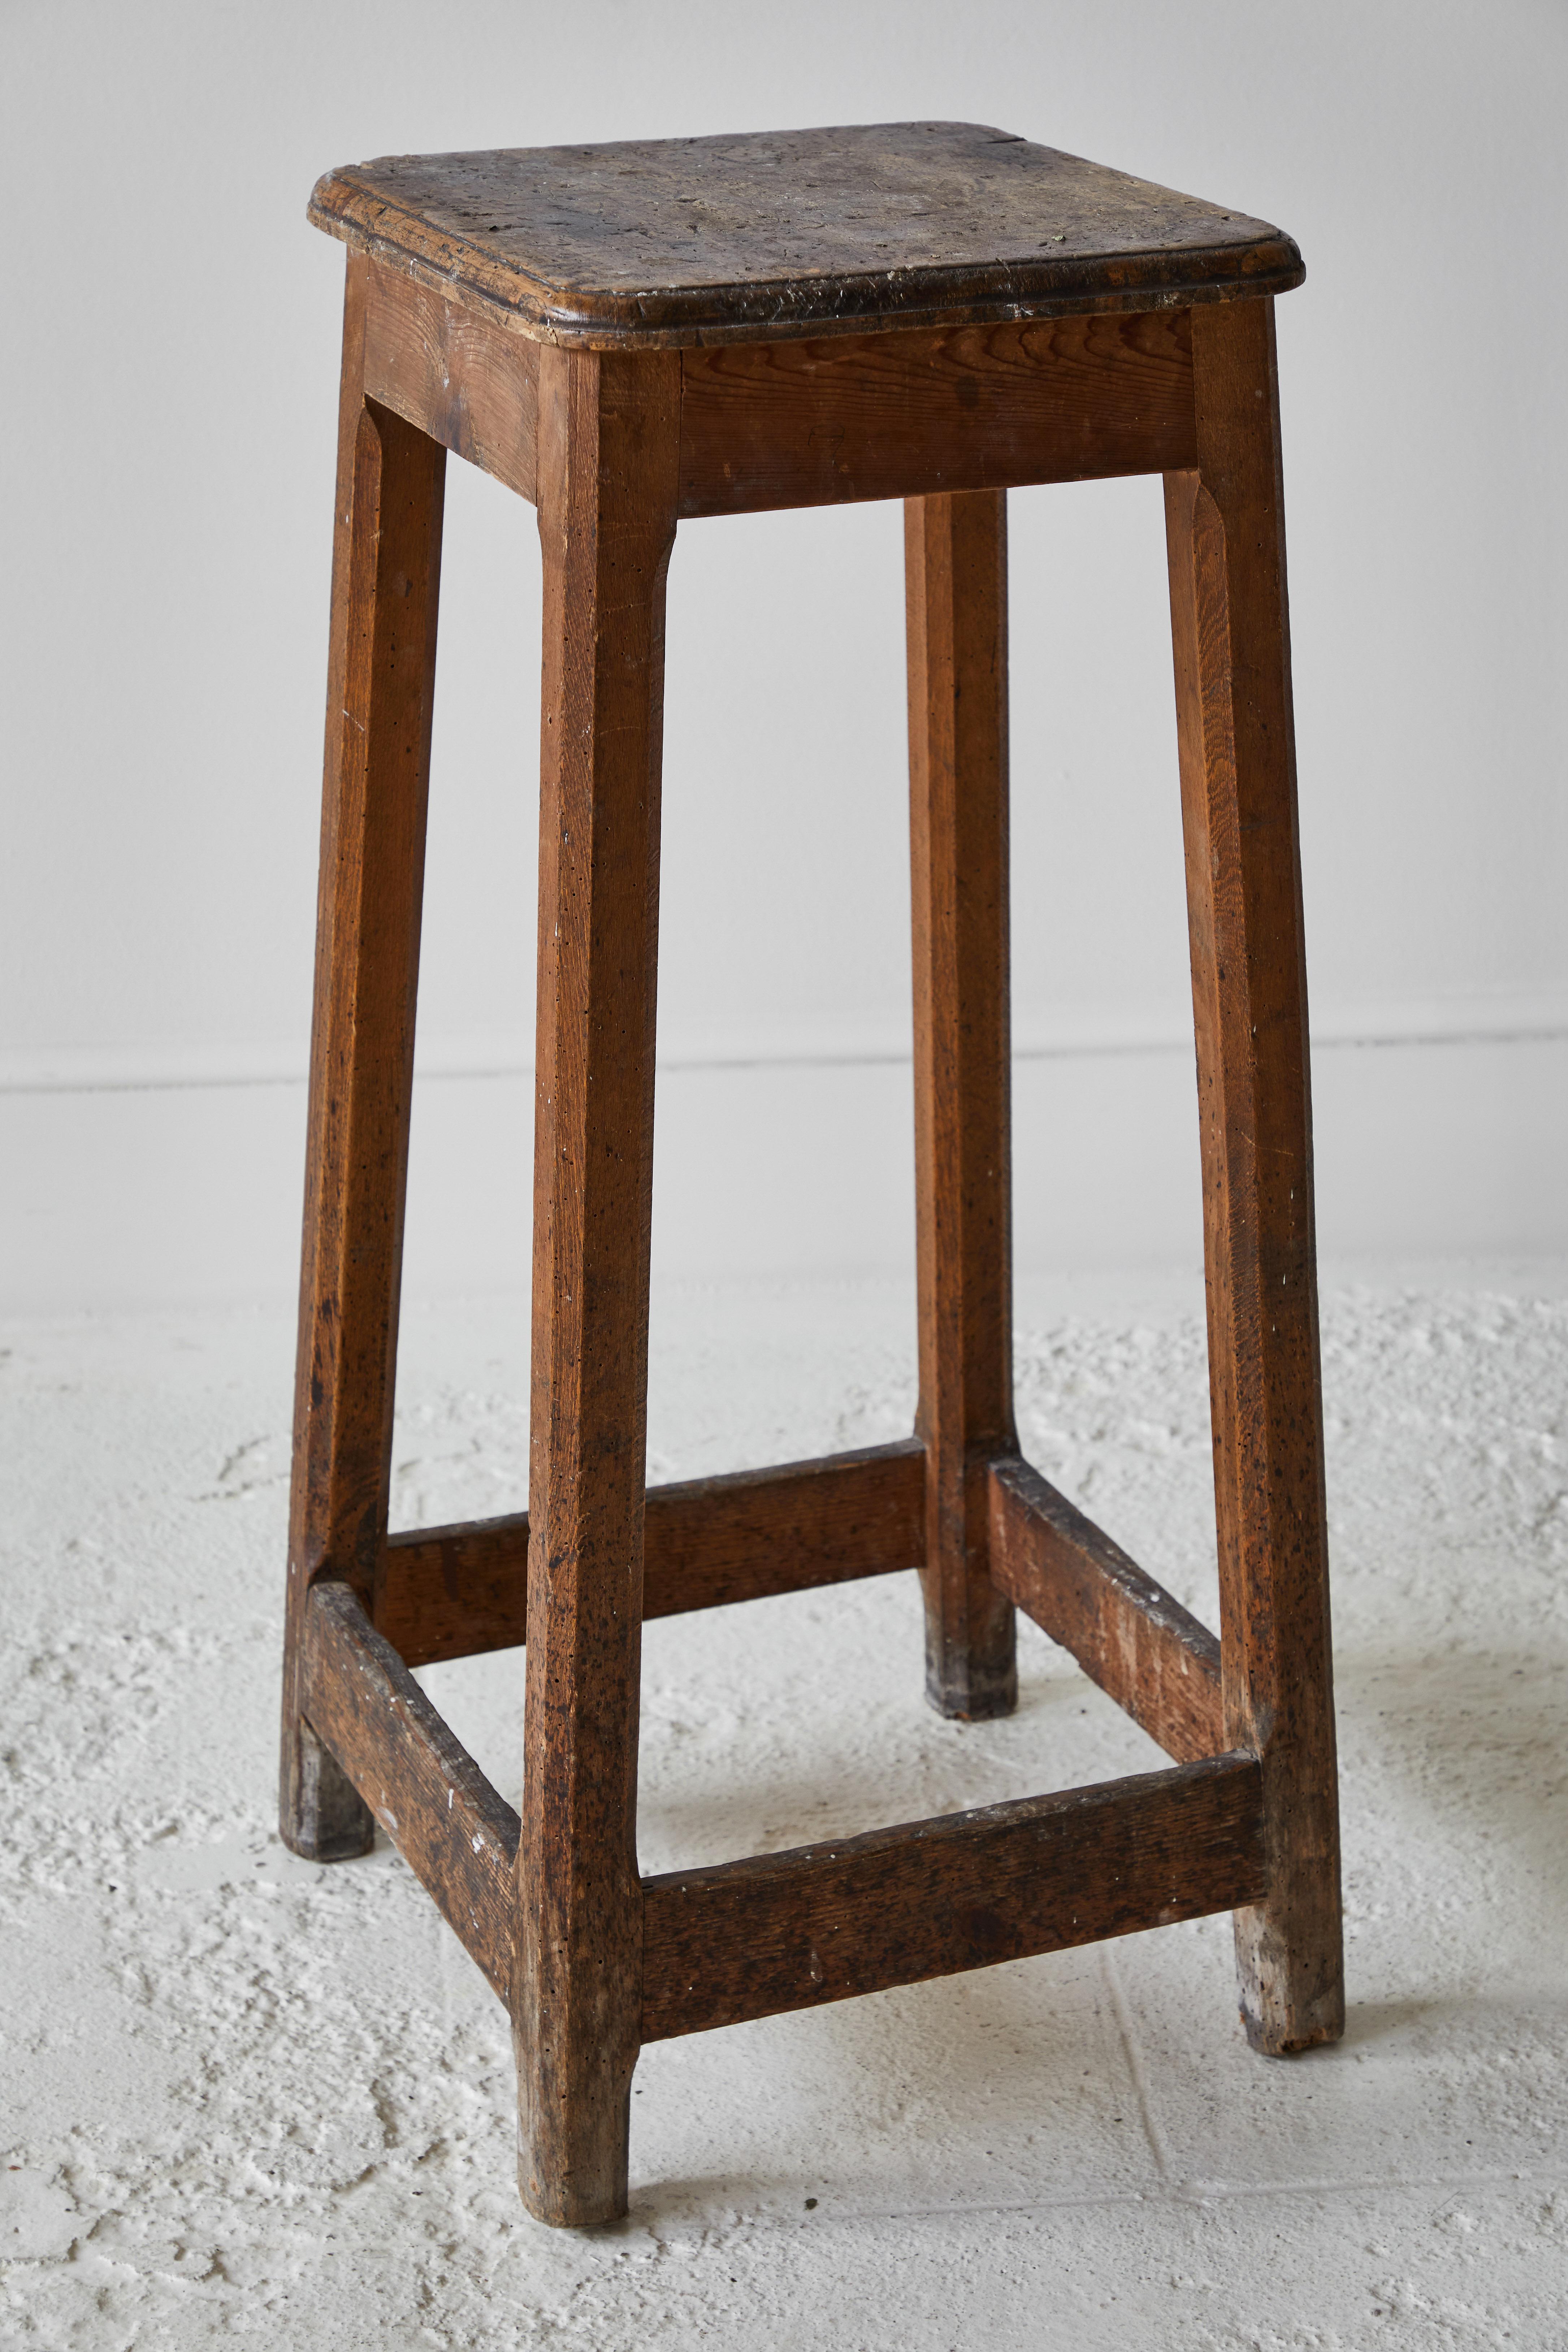 Wood Rustic Tall Pedestal Stool